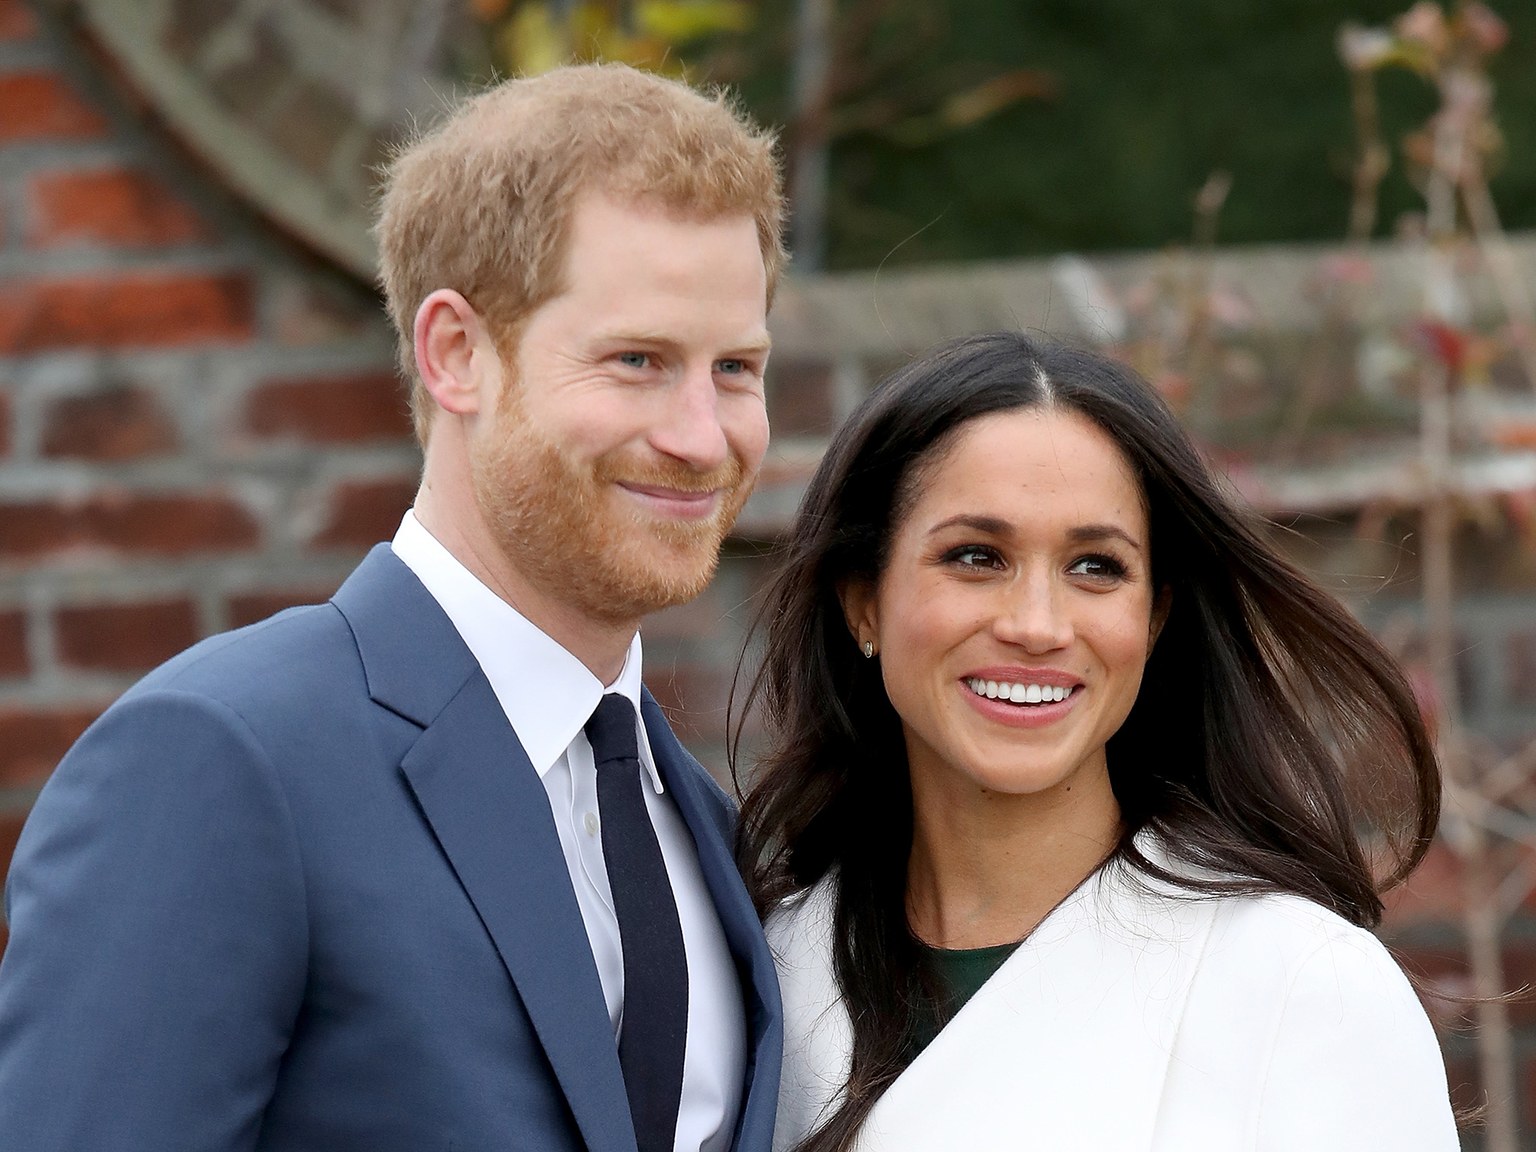 Le prince Harry et Meghan Markle parents : Pourquoi le royal baby ne portera pas de titre princier